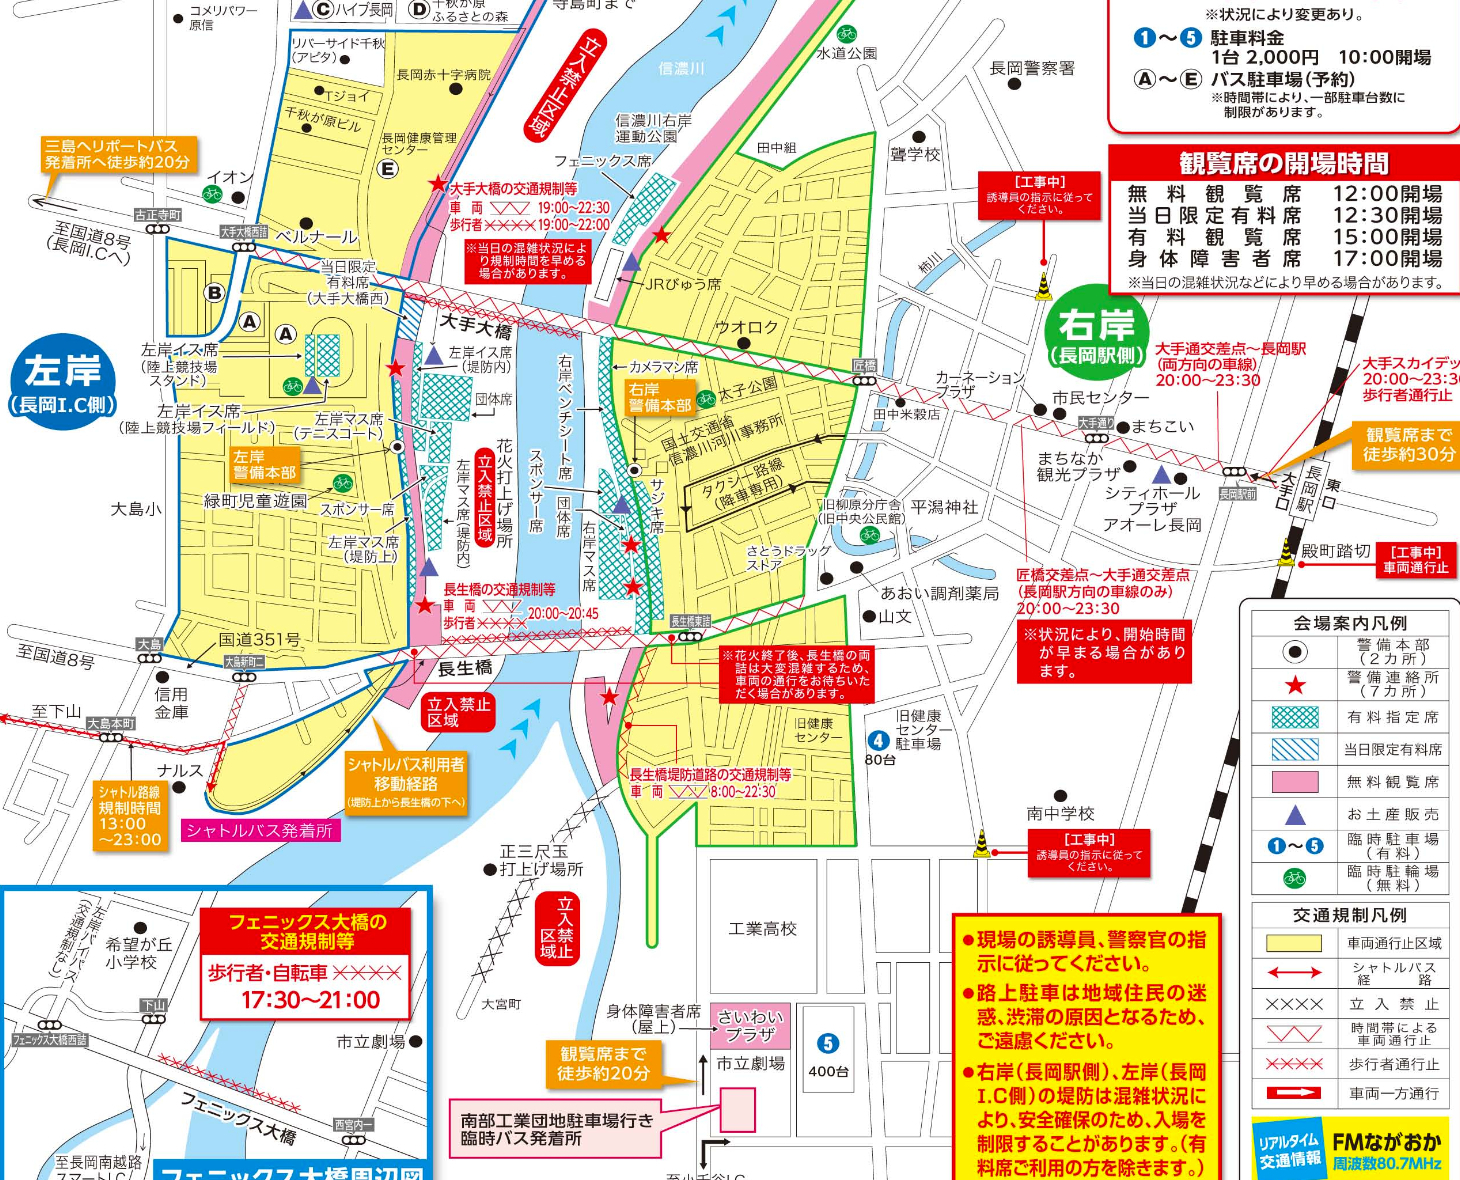 長岡花火大会 16 交通規制 通行止め 駐車場や臨時シャトルバス